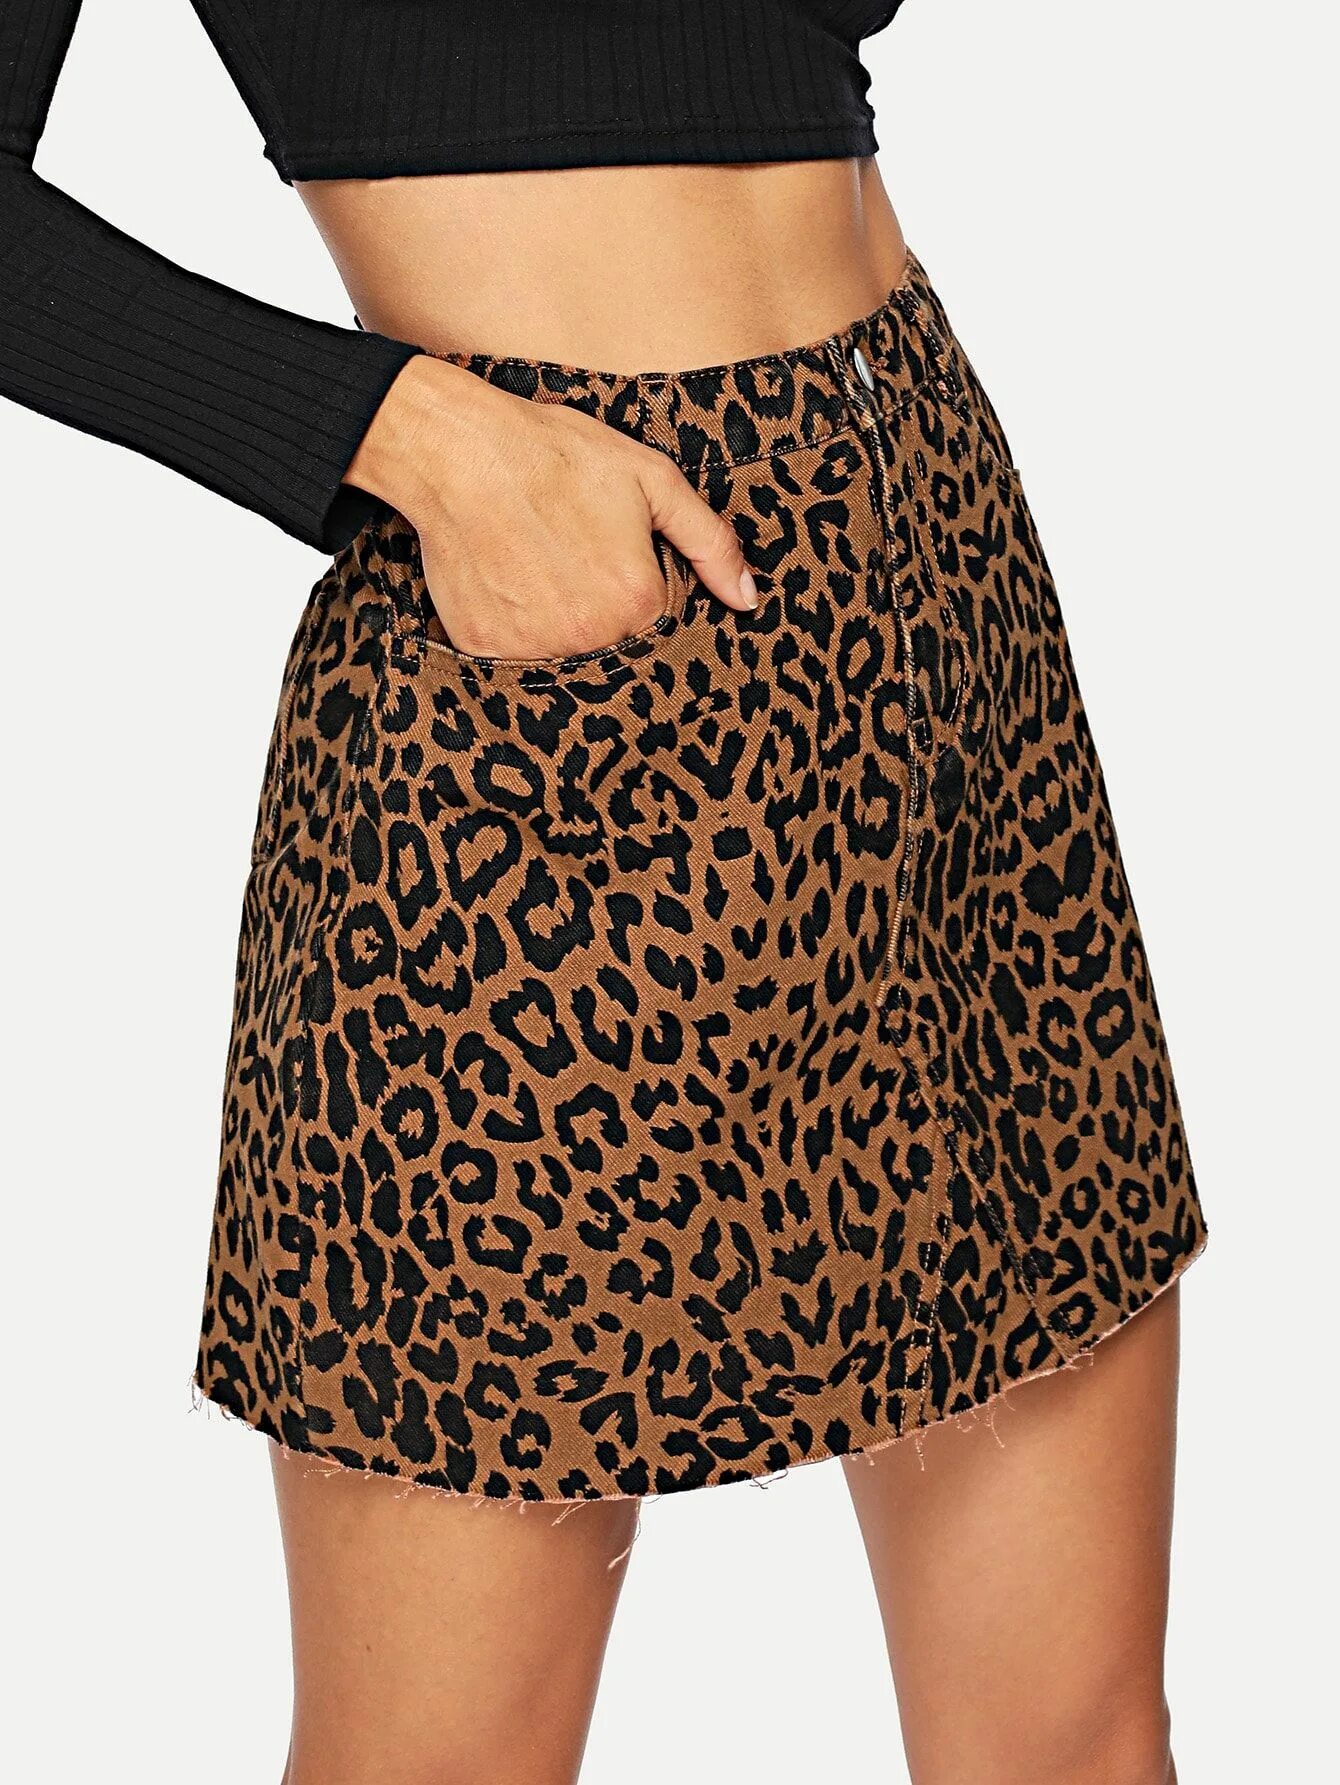 Леопардовая джинсовая юбка. Zara юбка леопардовая мини. Шайн леопардовая юбка. Юбка леопард Шайн.